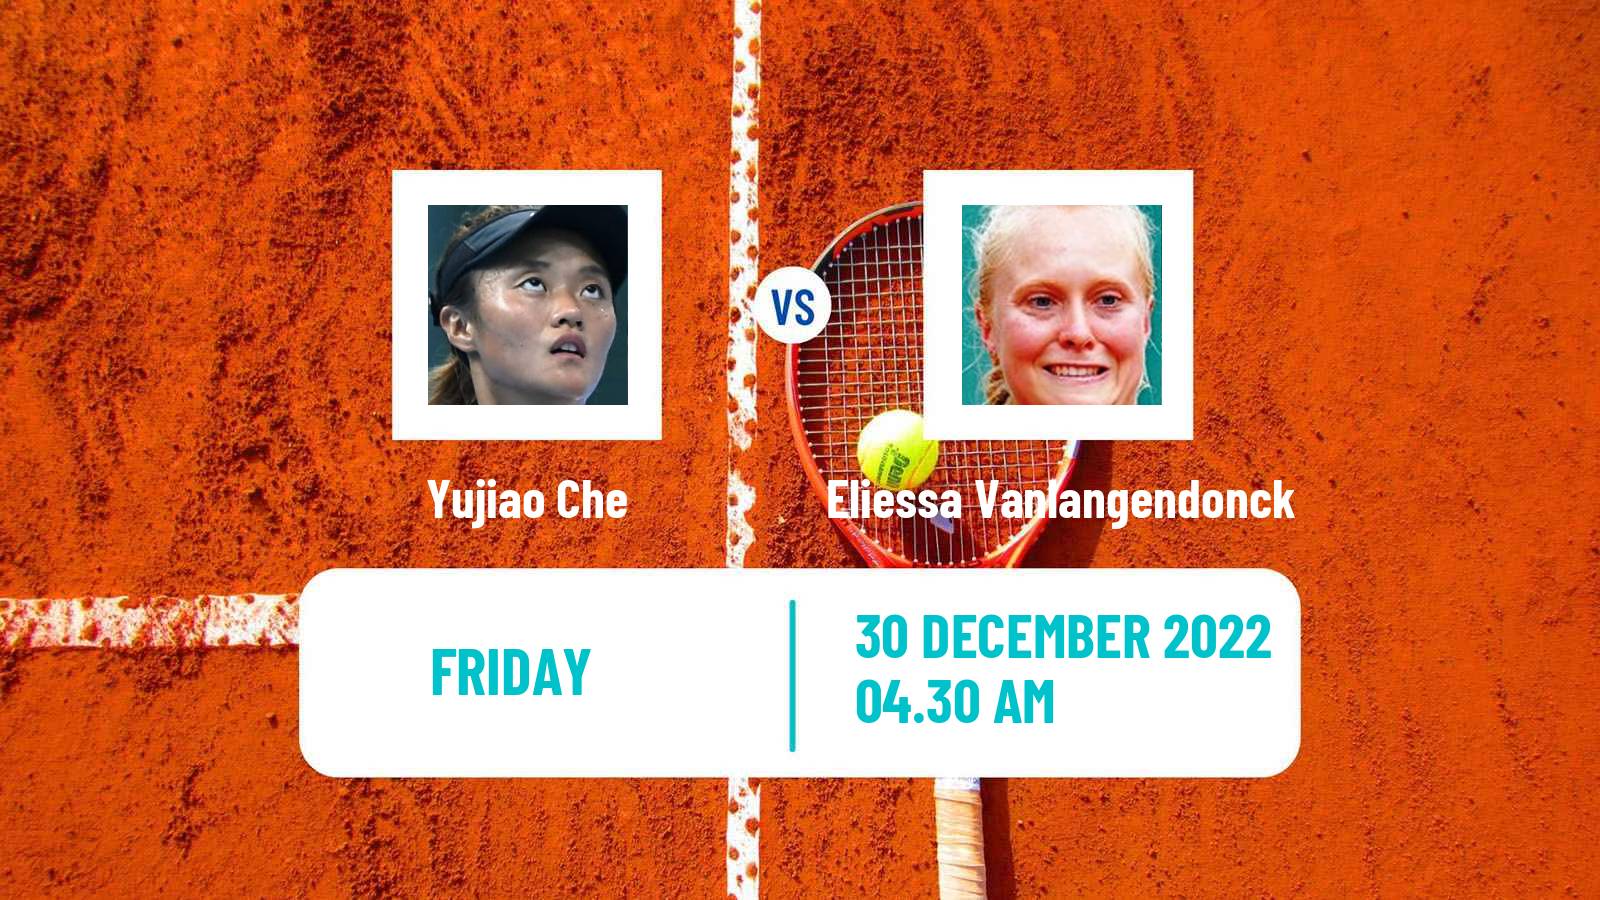 Tennis ITF Tournaments Yujiao Che - Eliessa Vanlangendonck